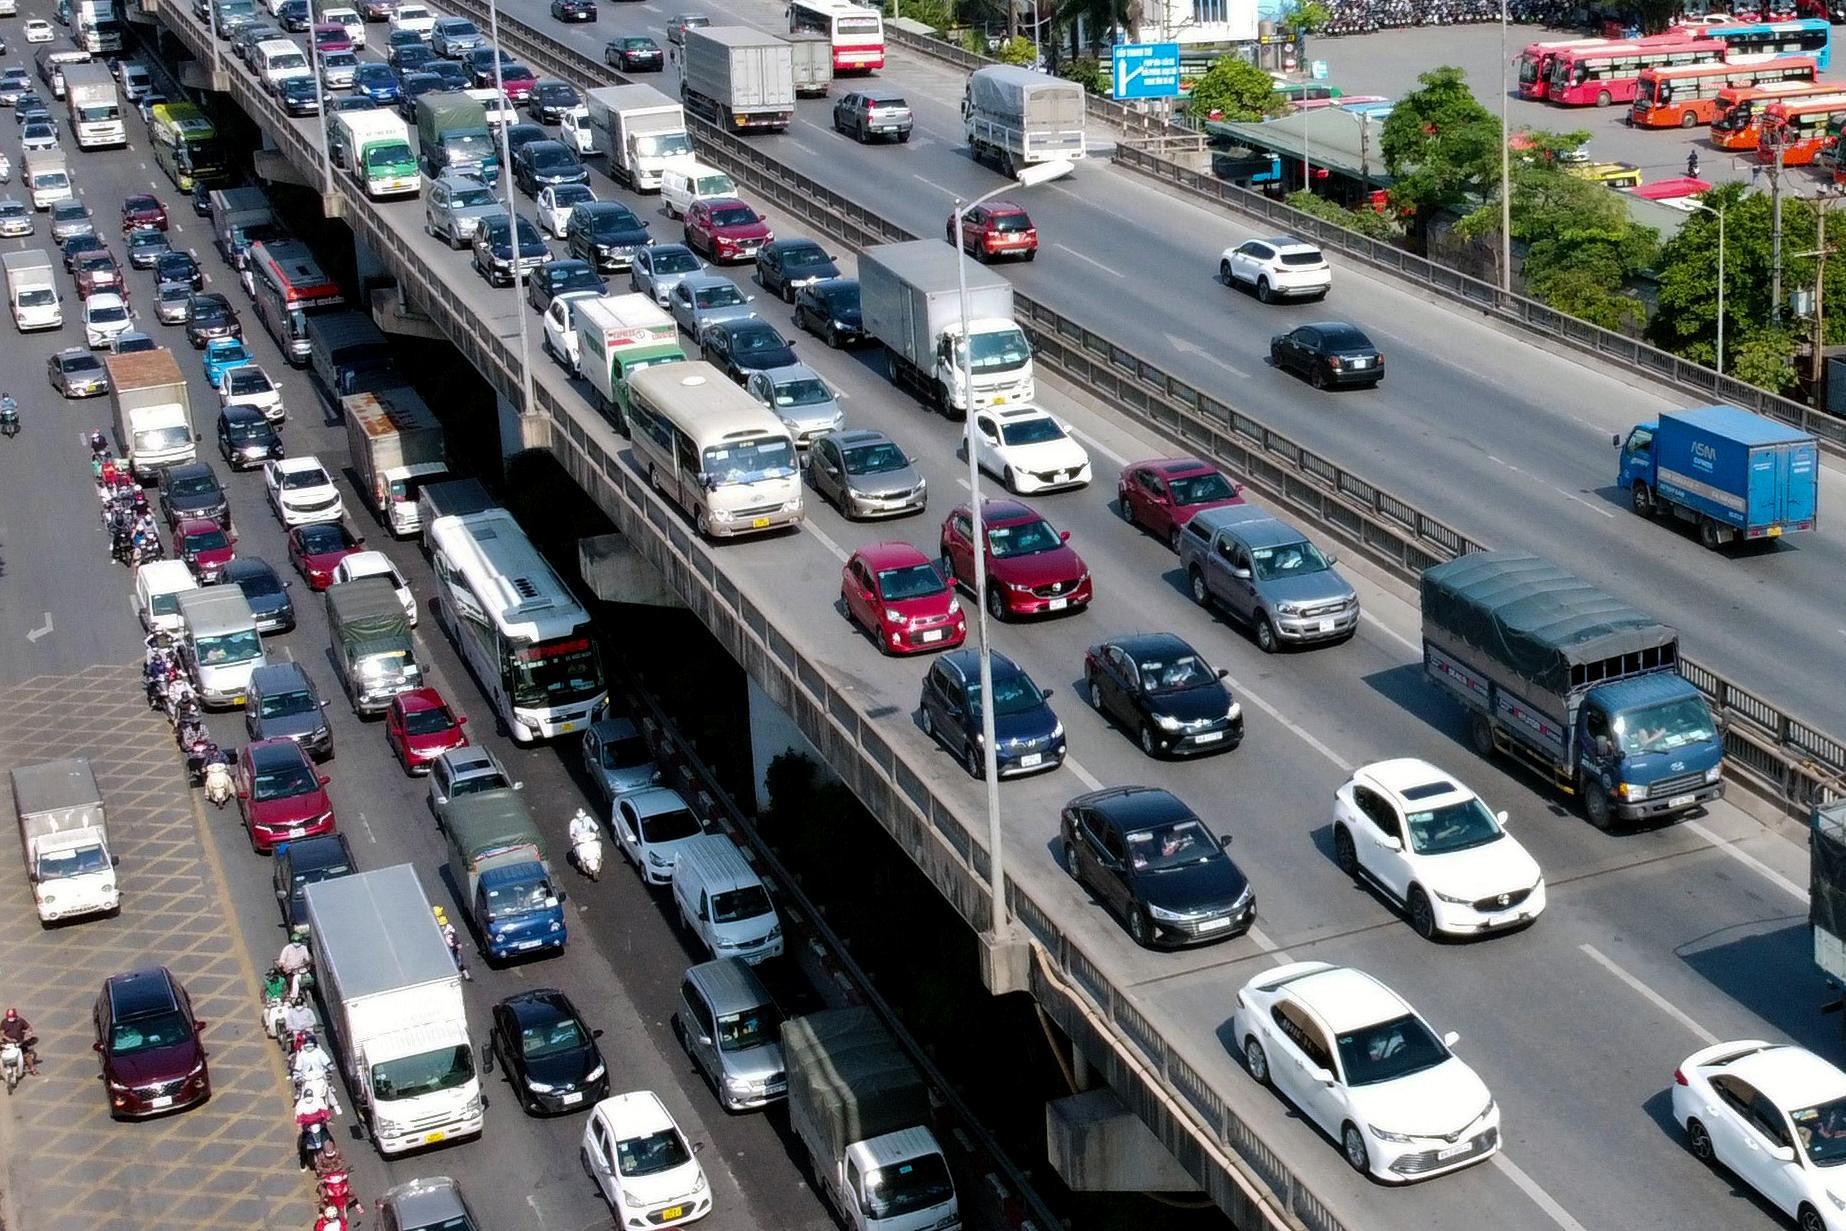 Học lái xe trên đường cao tốc, nguy hiểm cho cả người học và giáo viên?